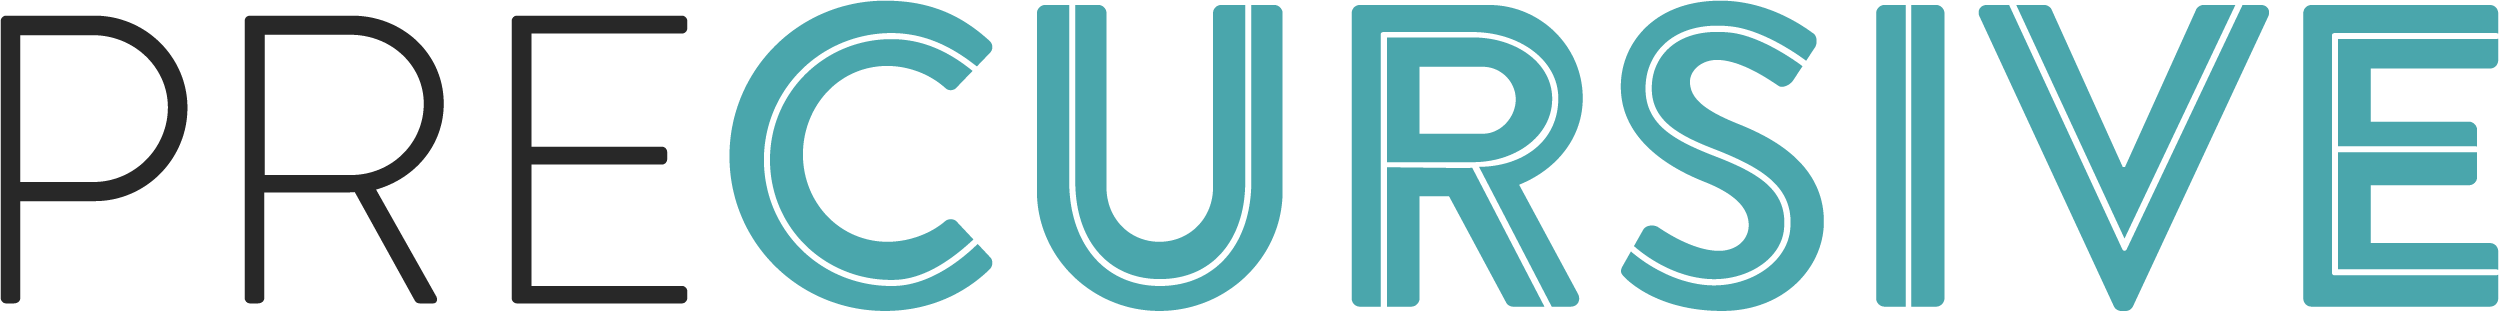 Precursive 2023 Logo